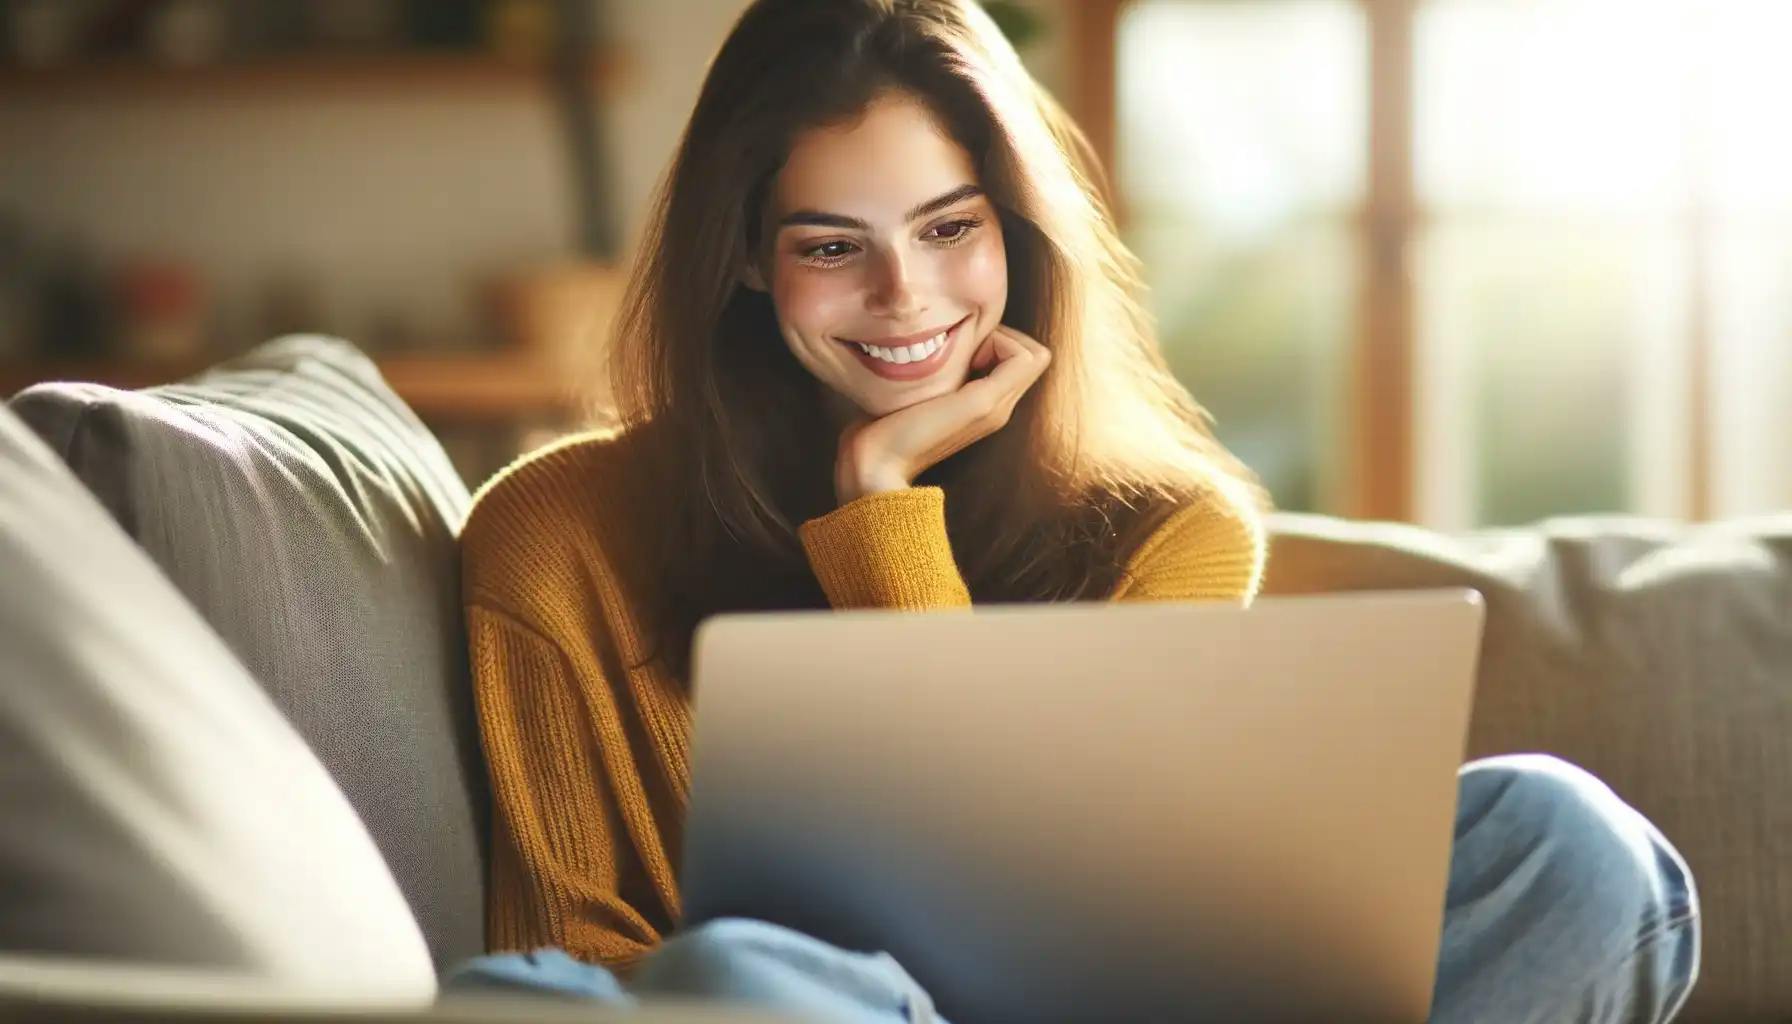 Woman Enjoying a Well Designed Website